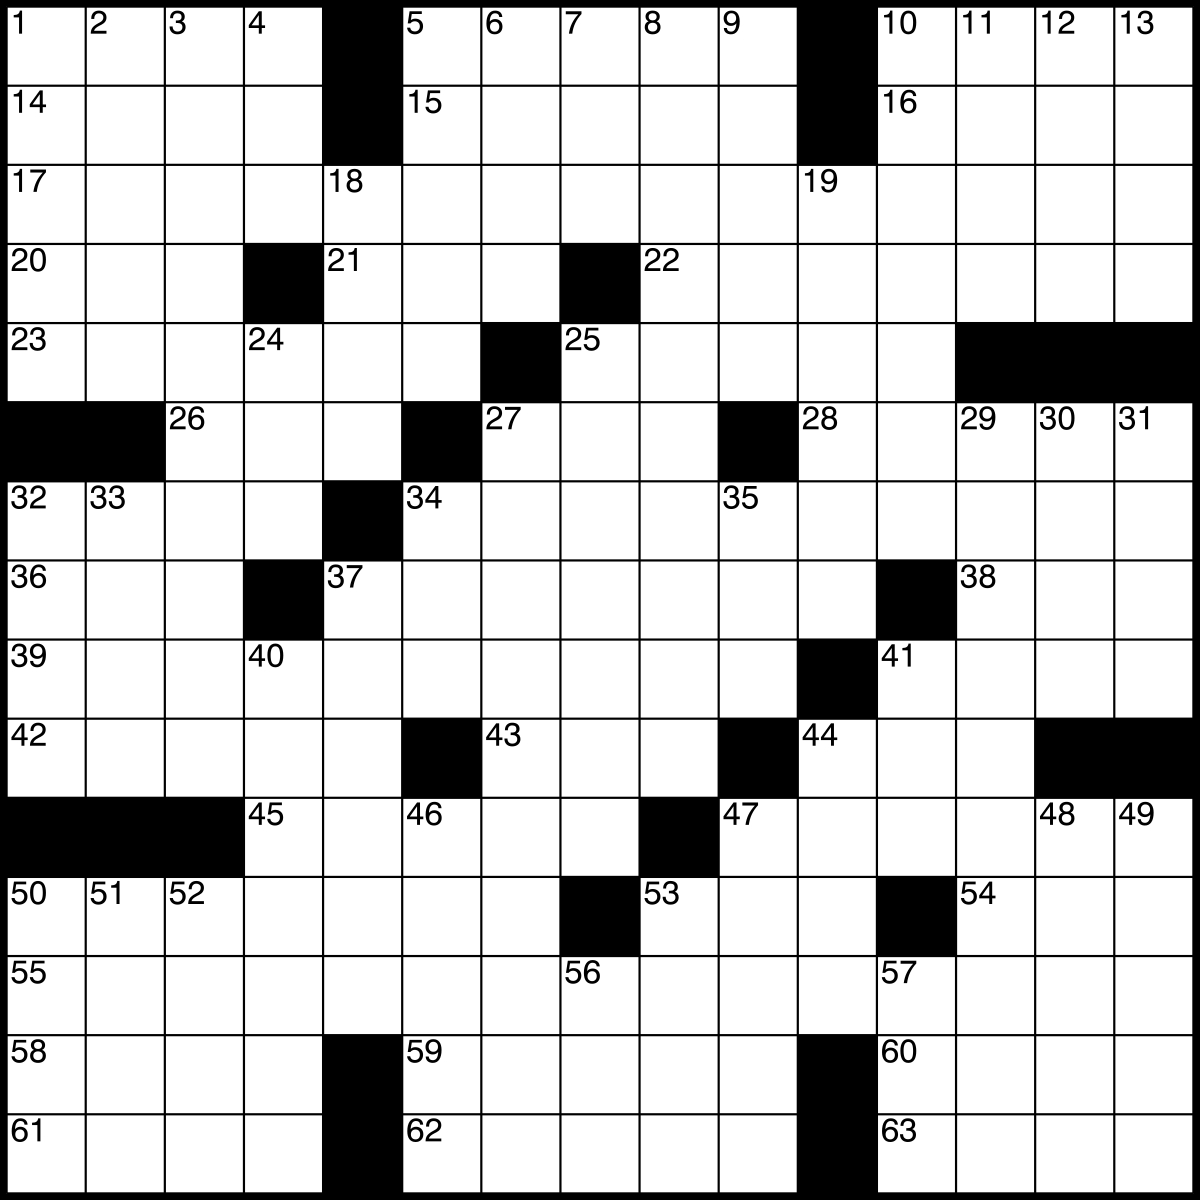 Printable Crossword Grids Blank